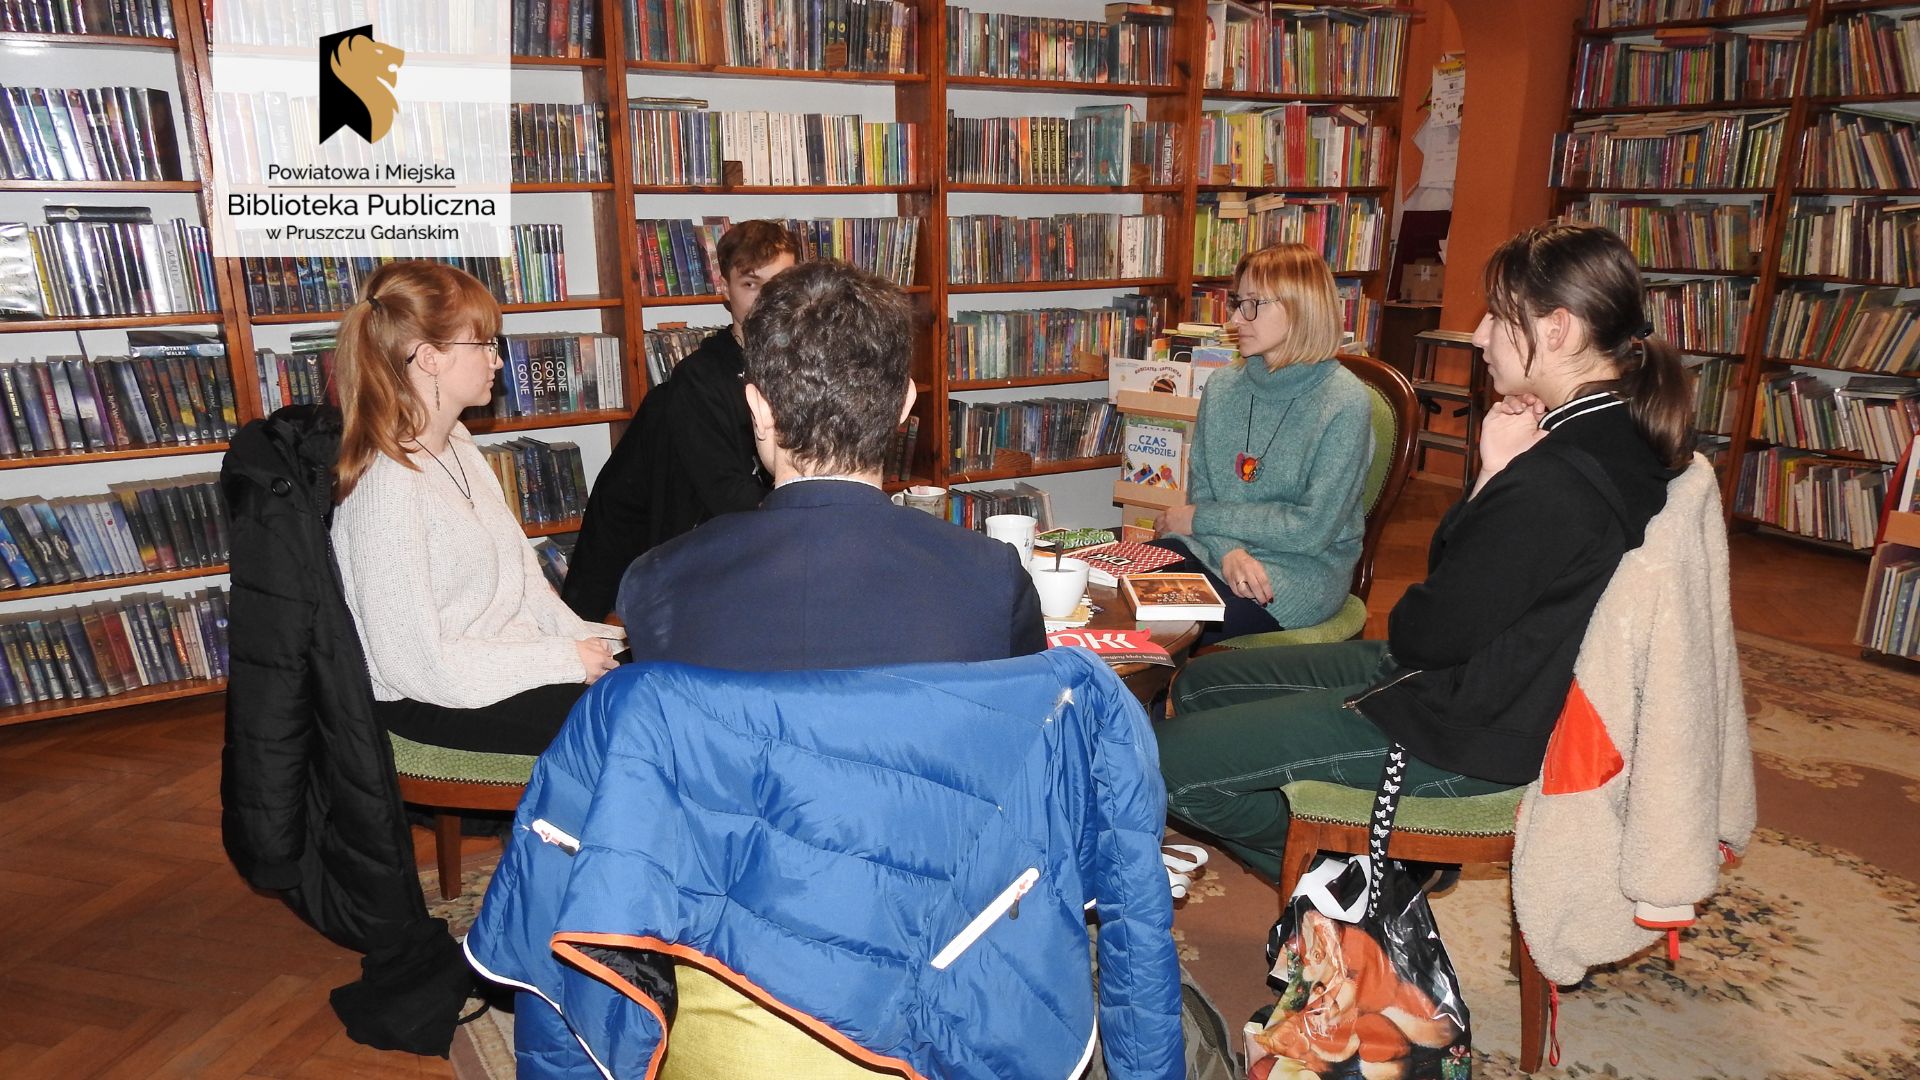 Wokół okrągłego stołu, na krzesłach i fotelach, siedzi 5 osób. Wśród nich jest bibliotekarka Joanna Łabasiewicz. Na stole ksiązki, filiżanki, logo Dyskusyjnego Klubu Książki.